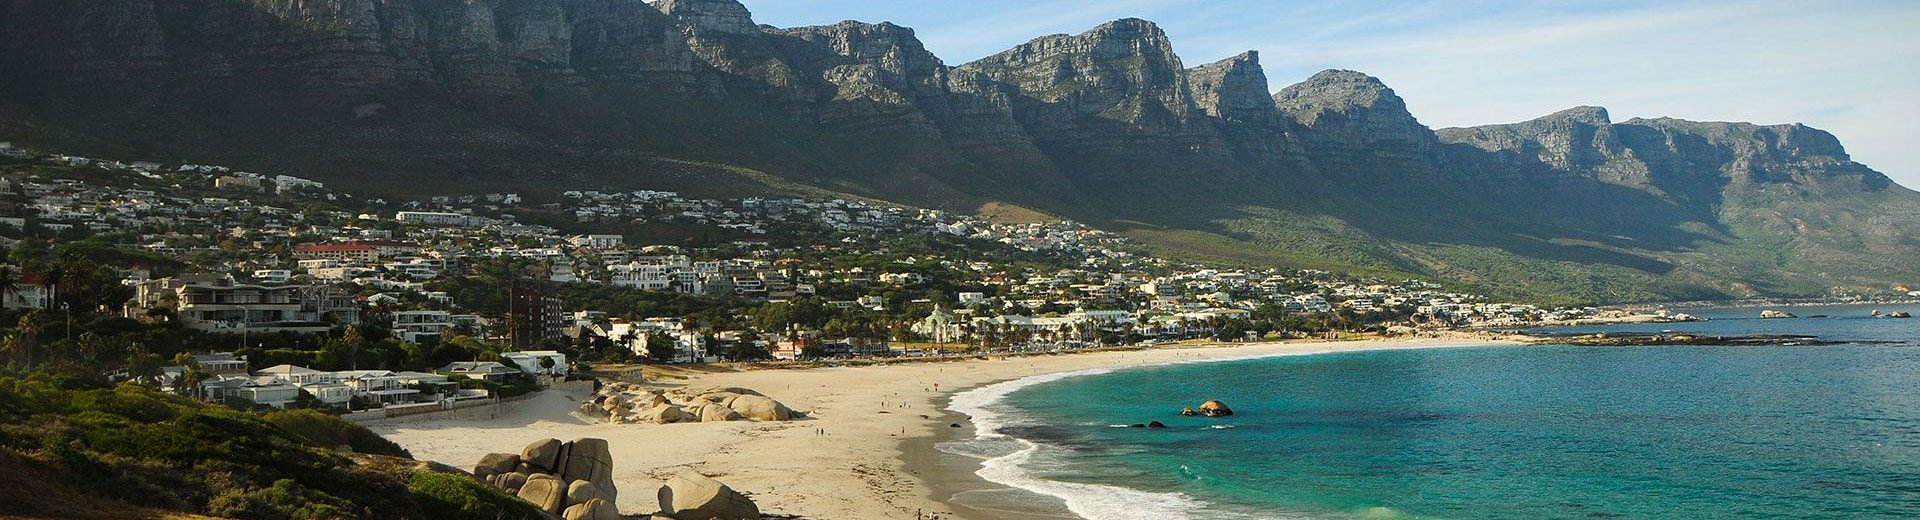 Praias da África do Sul: Lugares incríveis e belos para conhecer